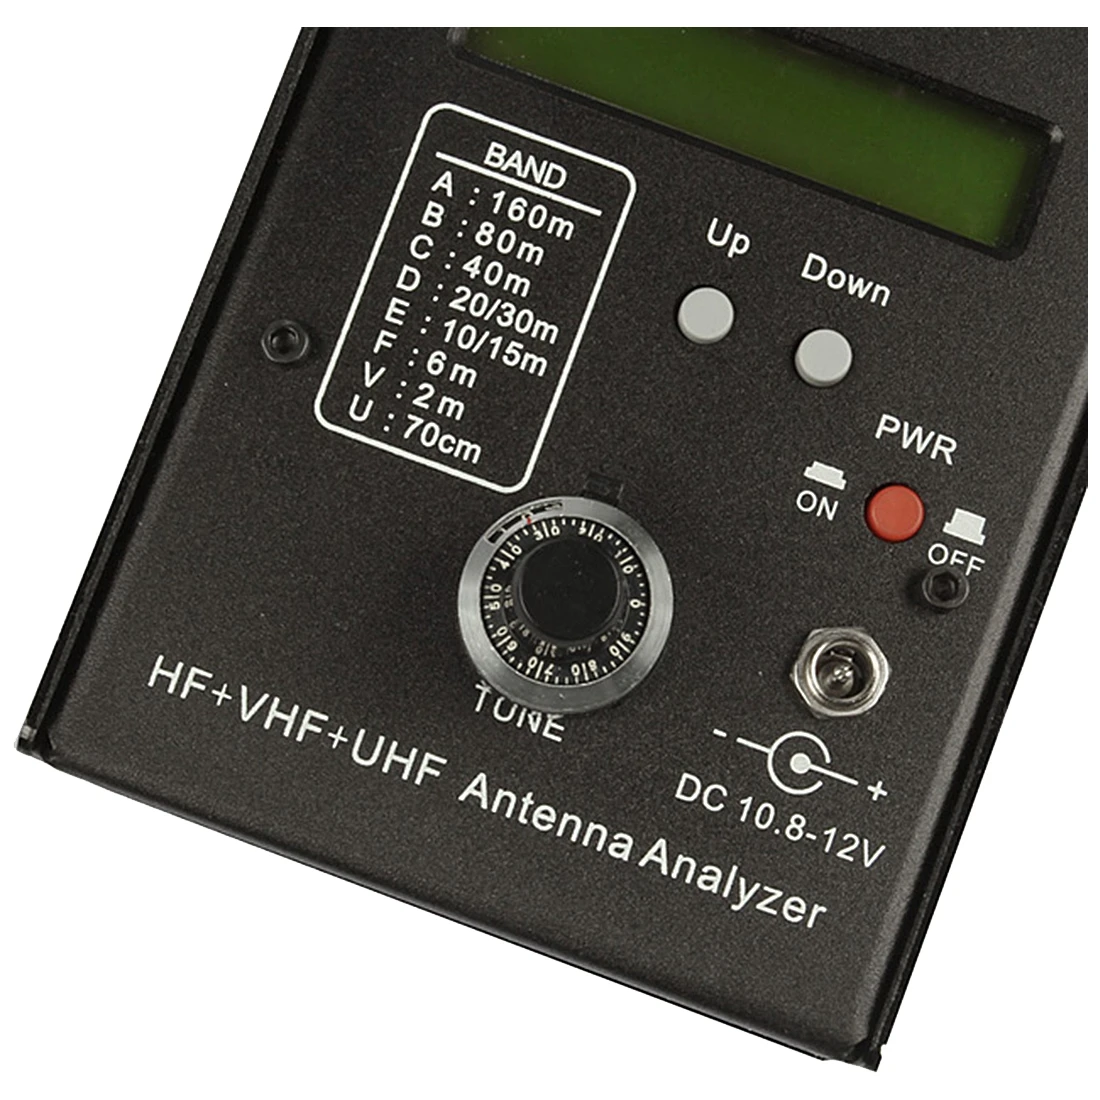 DIY AW07A HF/VHF/UHF 160 м сопротивление КСВ антенный анализатор для радиолюбителей